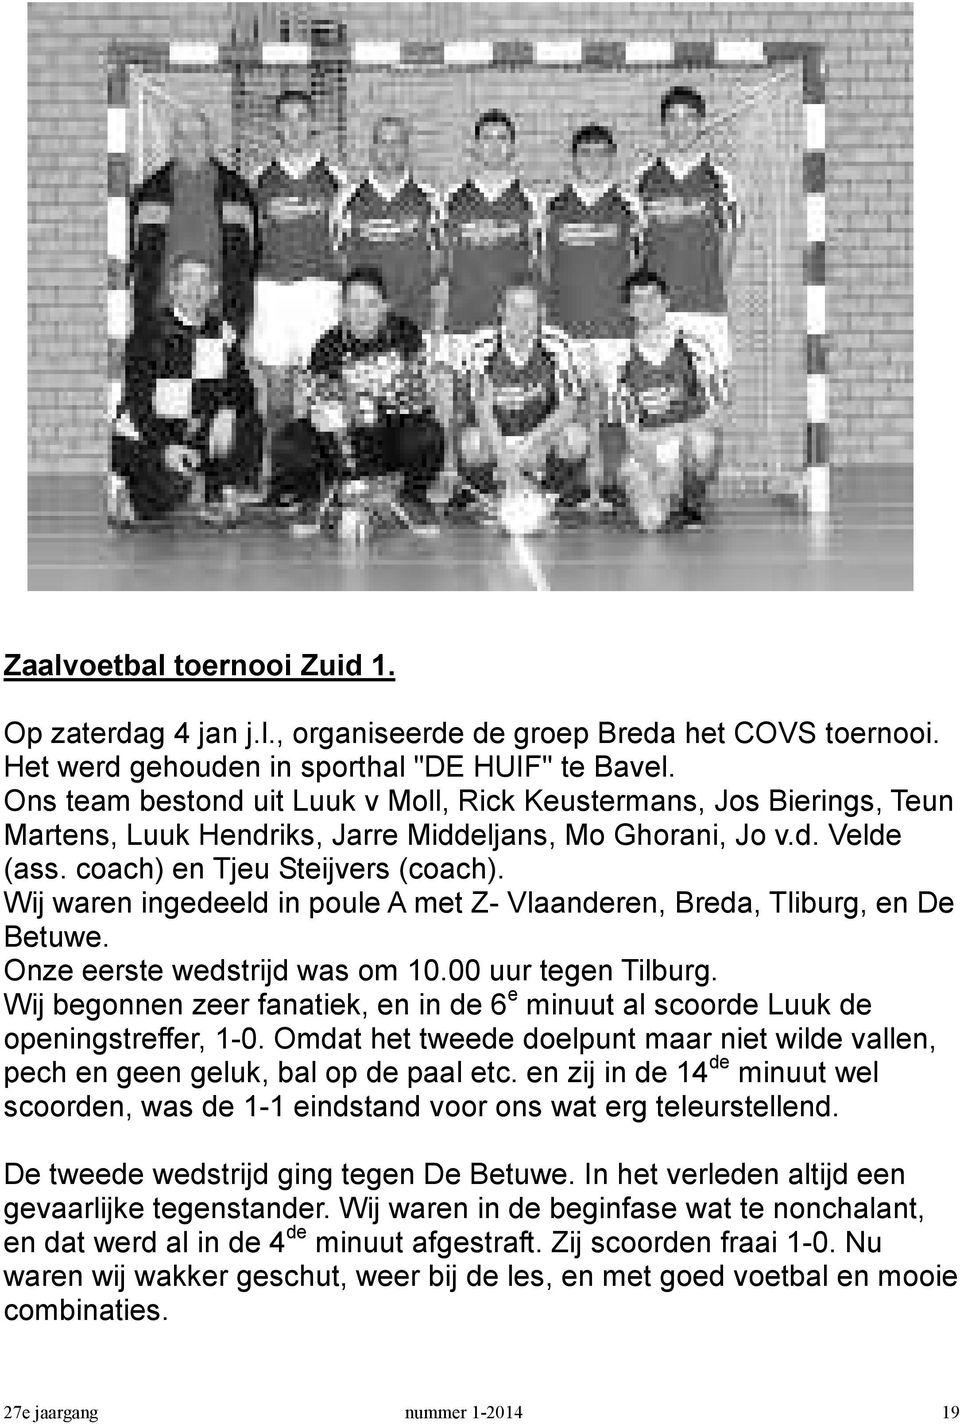 Wij waren ingedeeld in poule A met Z- Vlaanderen, Breda, Tliburg, en De Betuwe. Onze eerste wedstrijd was om 10.00 uur tegen Tilburg.